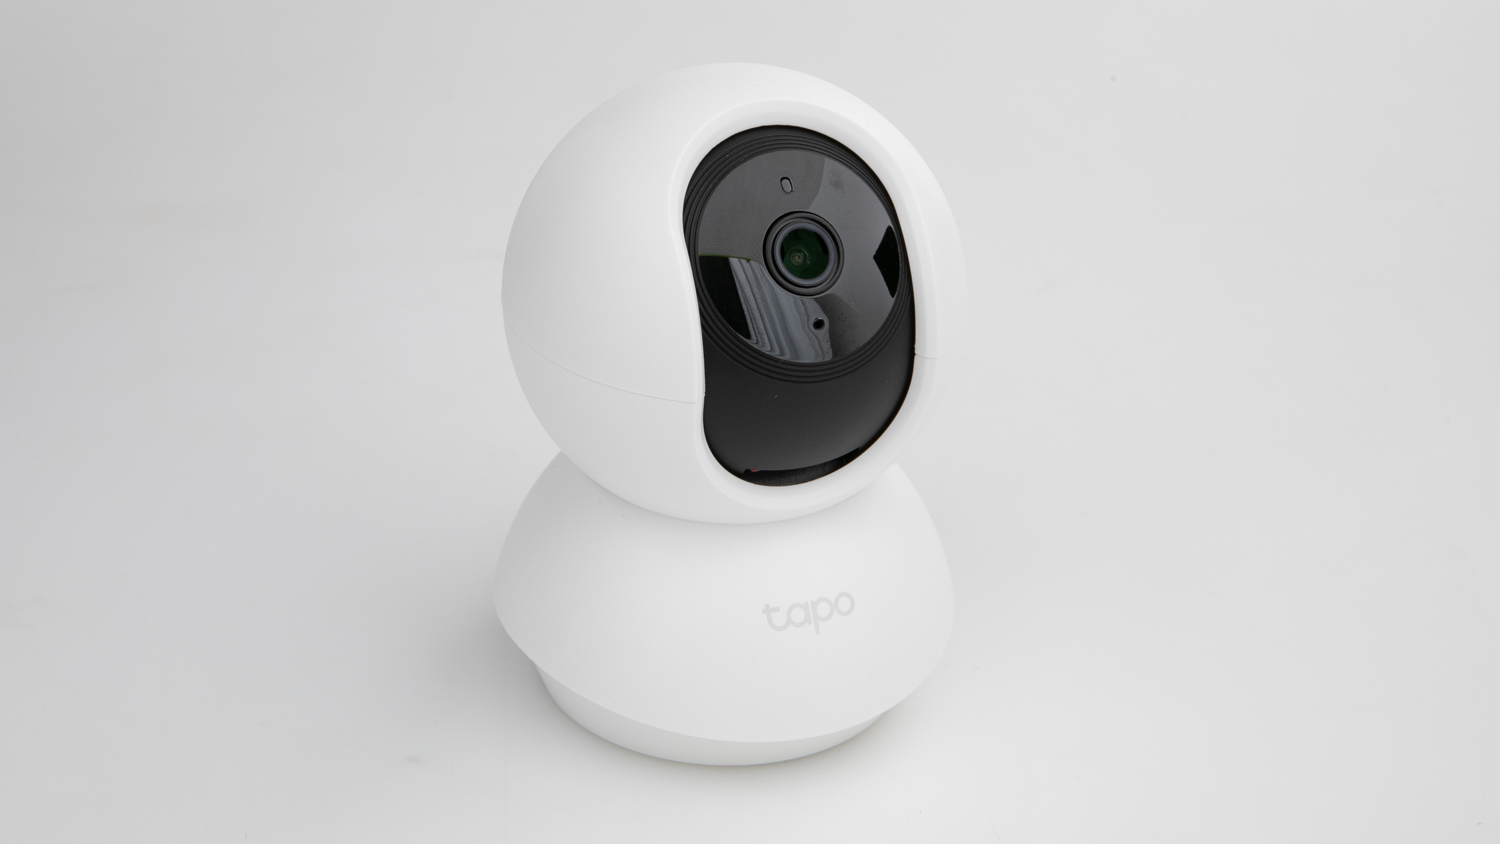 Tapo C210 Pan & Tilt Security Wi-Fi Camera